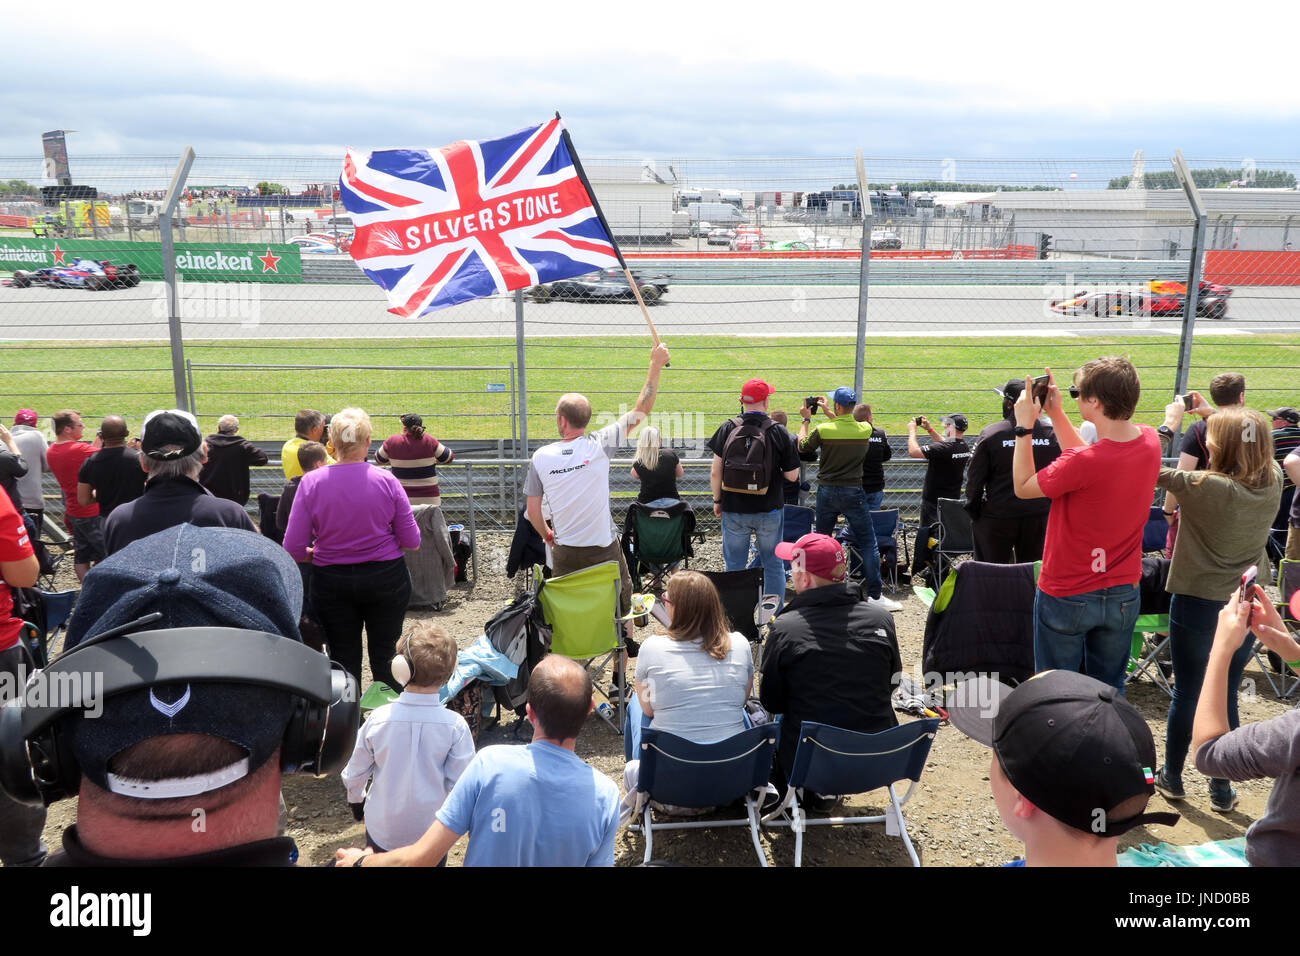 Runde vor dem Rennen - Silverstone Flag auf der Rennstrecke Formula1, British F1 GP, Großbritannien Stockfoto